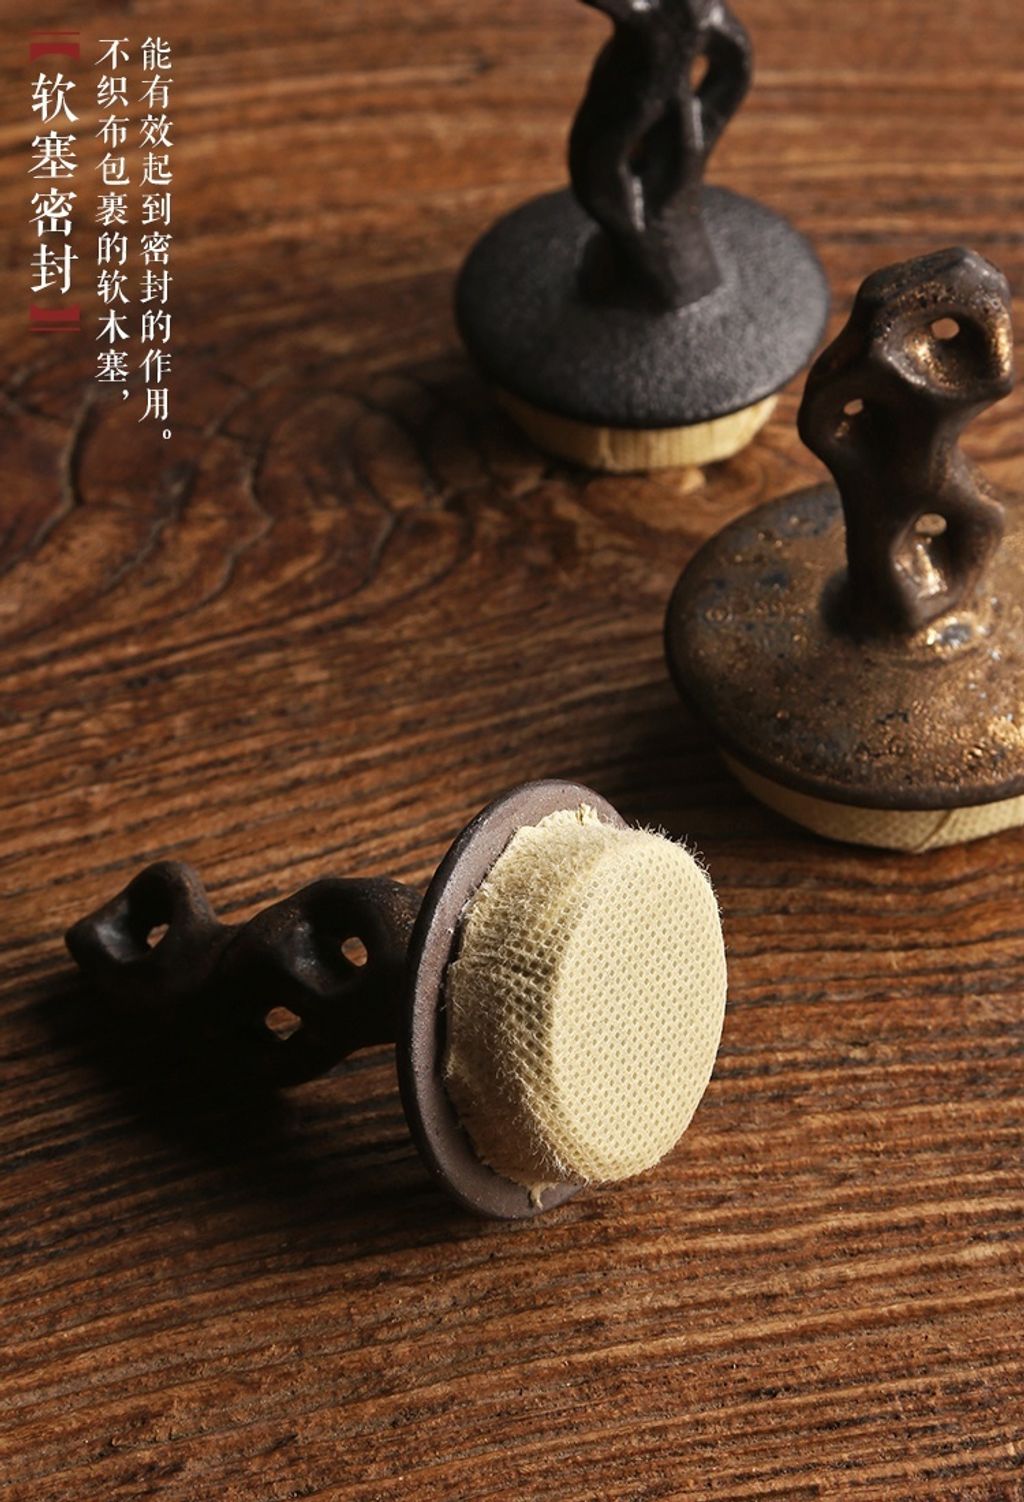 奇石茶葉罐2-5.jpg